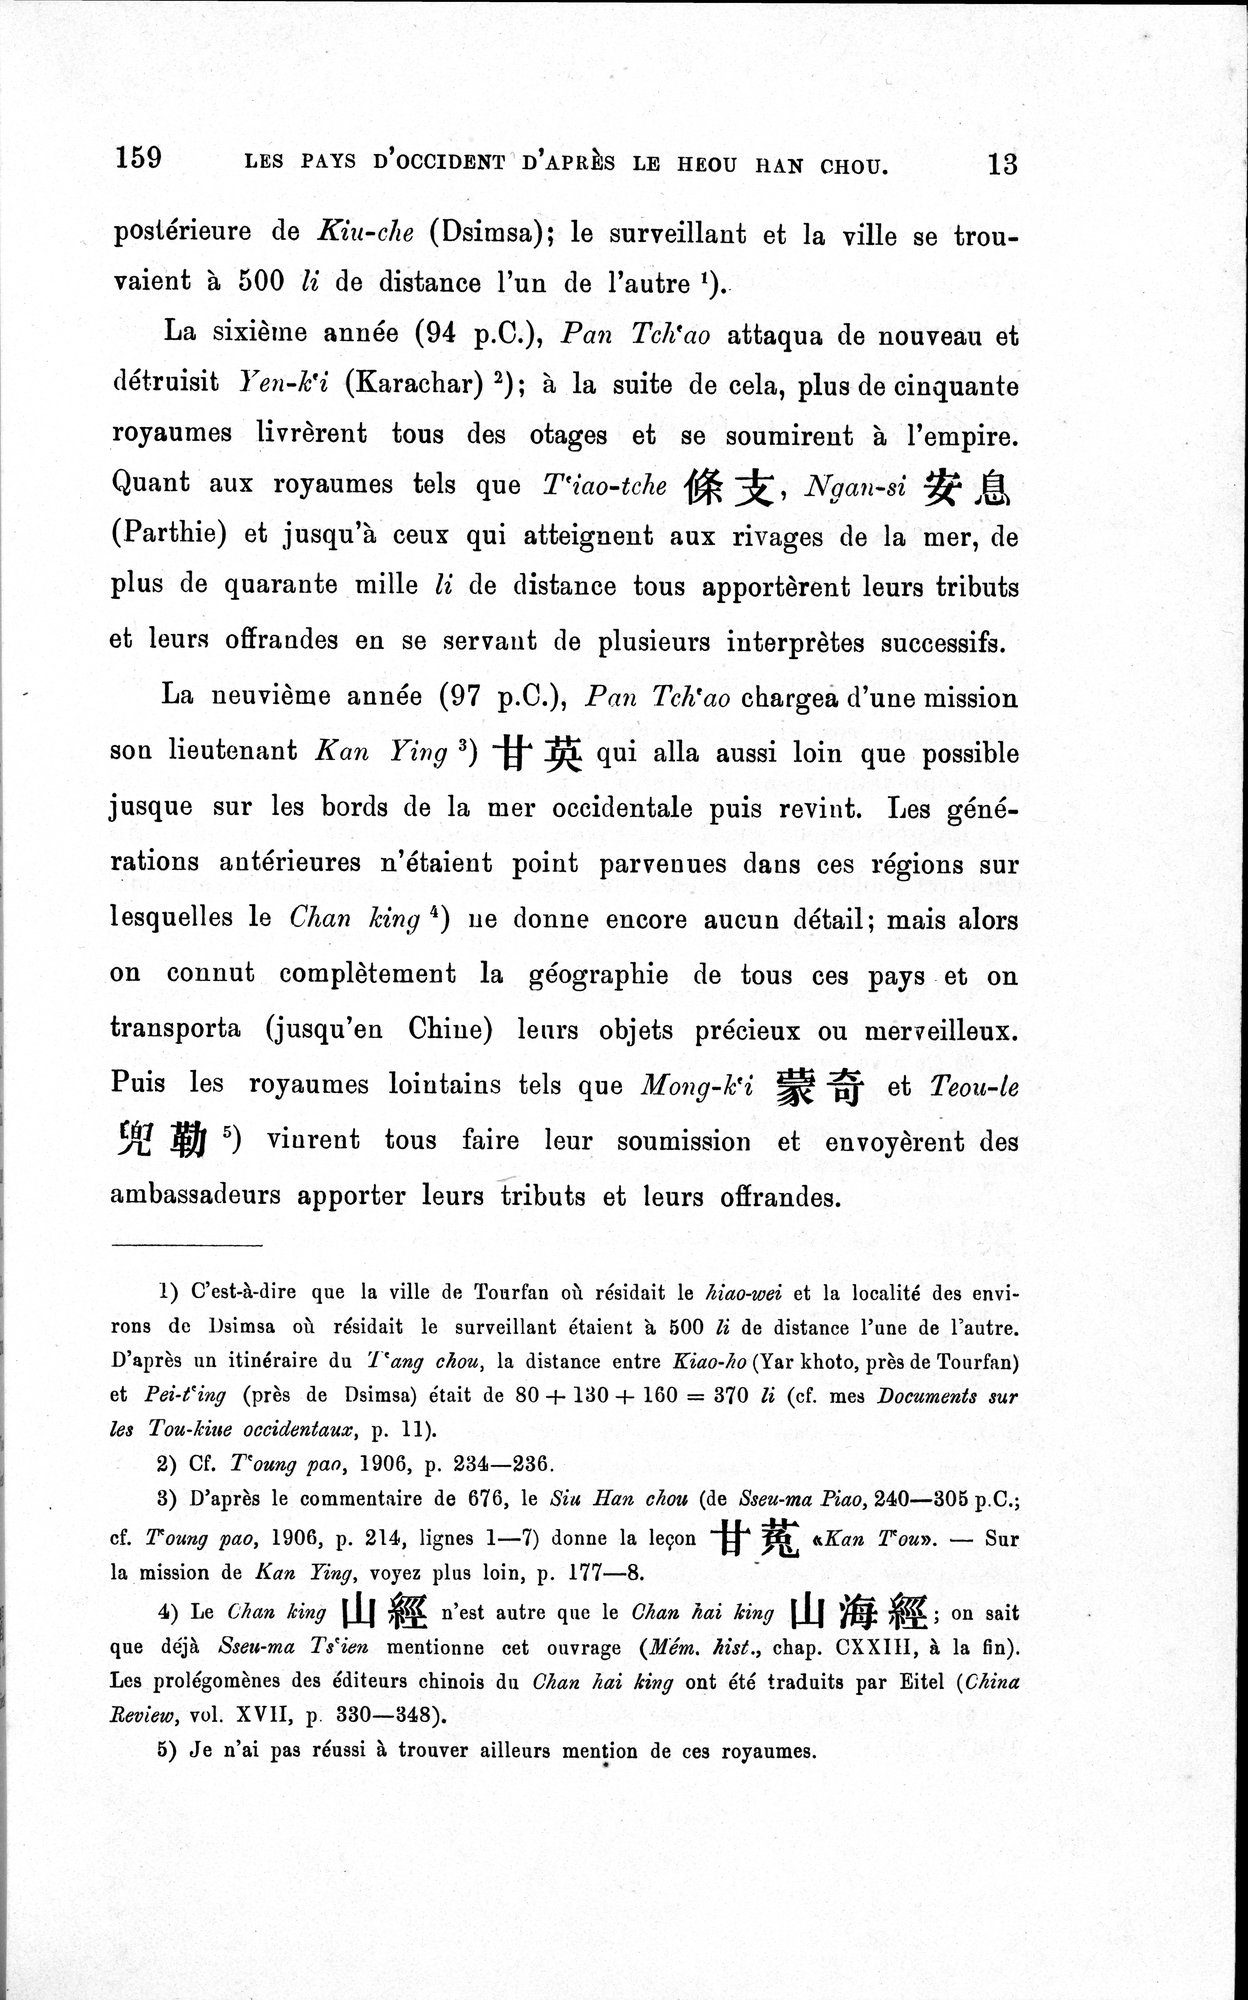 Les pays d'Occident d'après le Heou Han Chou : vol.1 / Page 21 (Grayscale High Resolution Image)